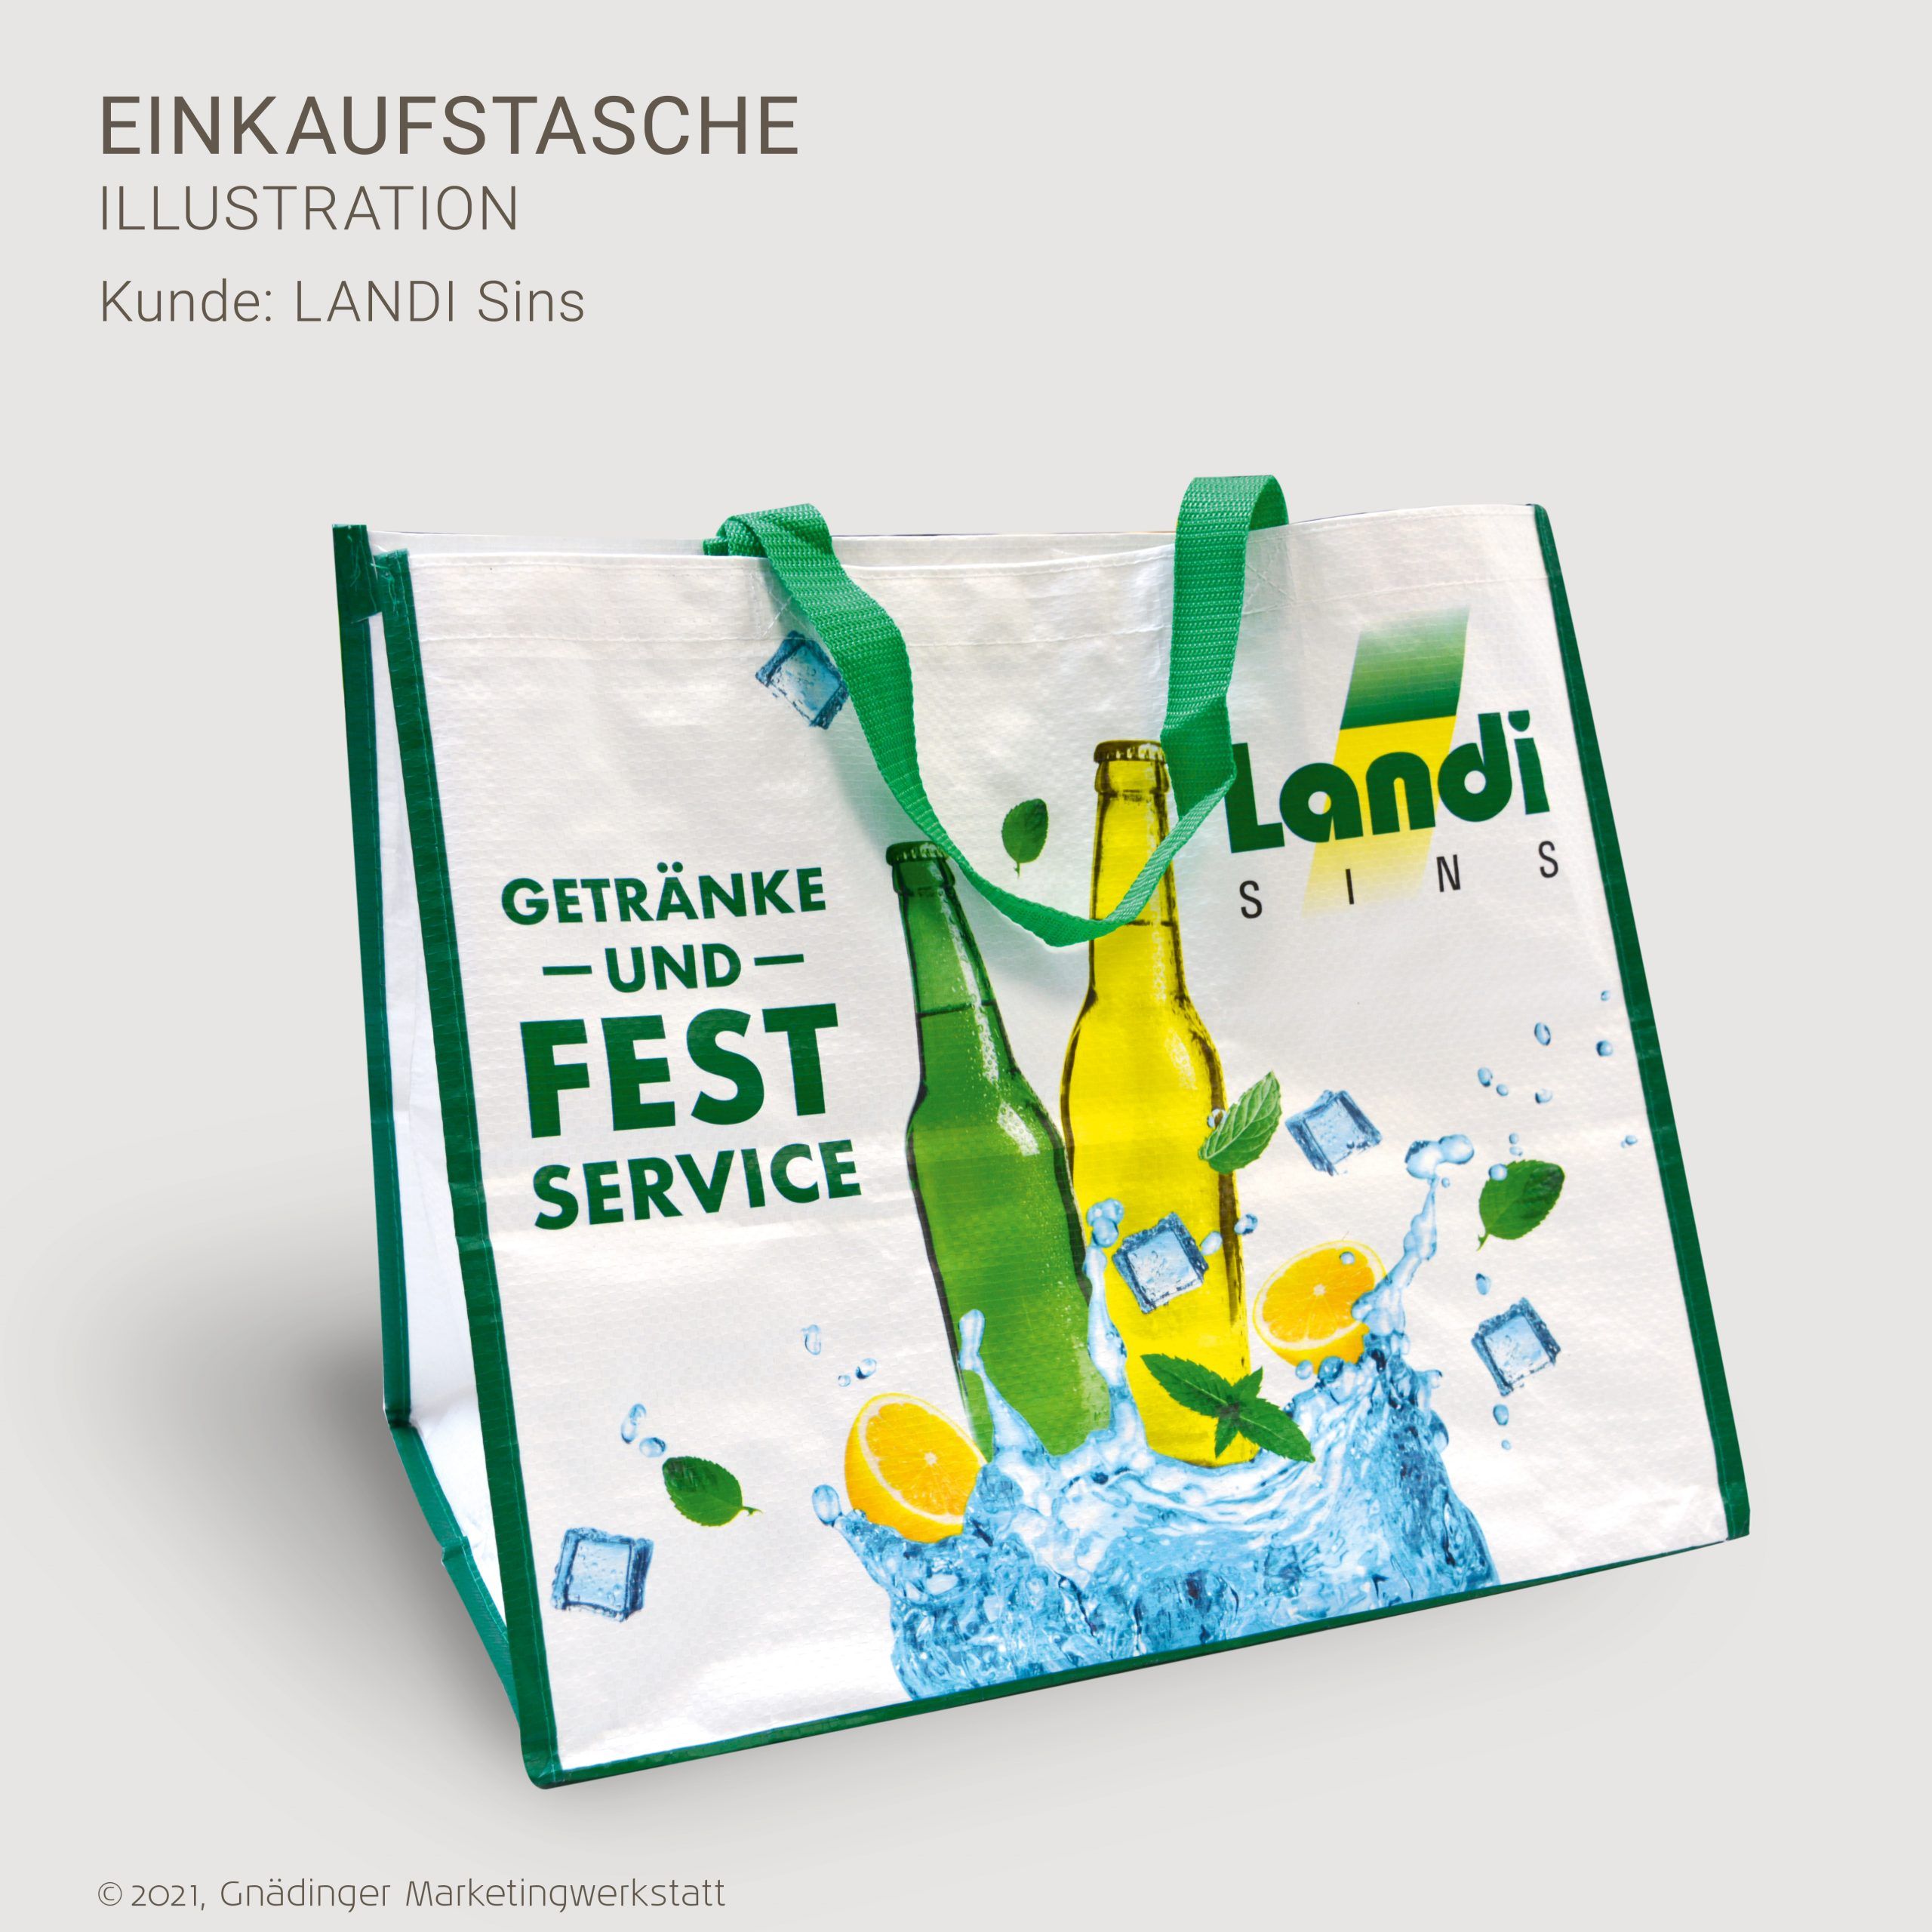 gnaedinger-marketingwerkstatt-sins-referenzen-landi-sins-einkaufstasche-05-2021